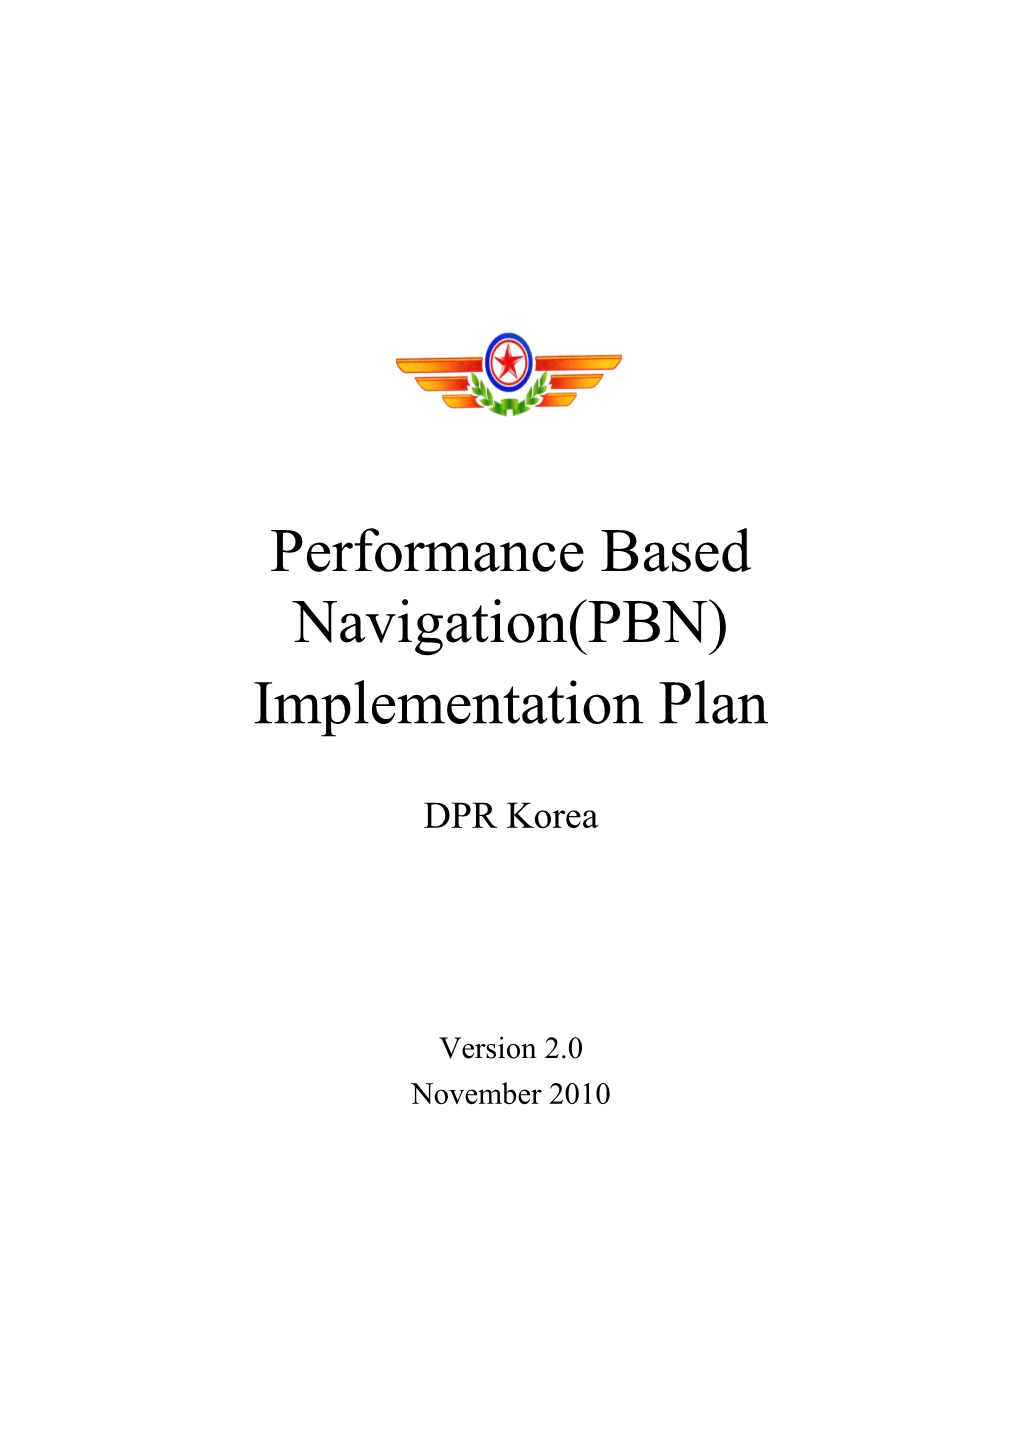 GACA PBN Implementation Plan